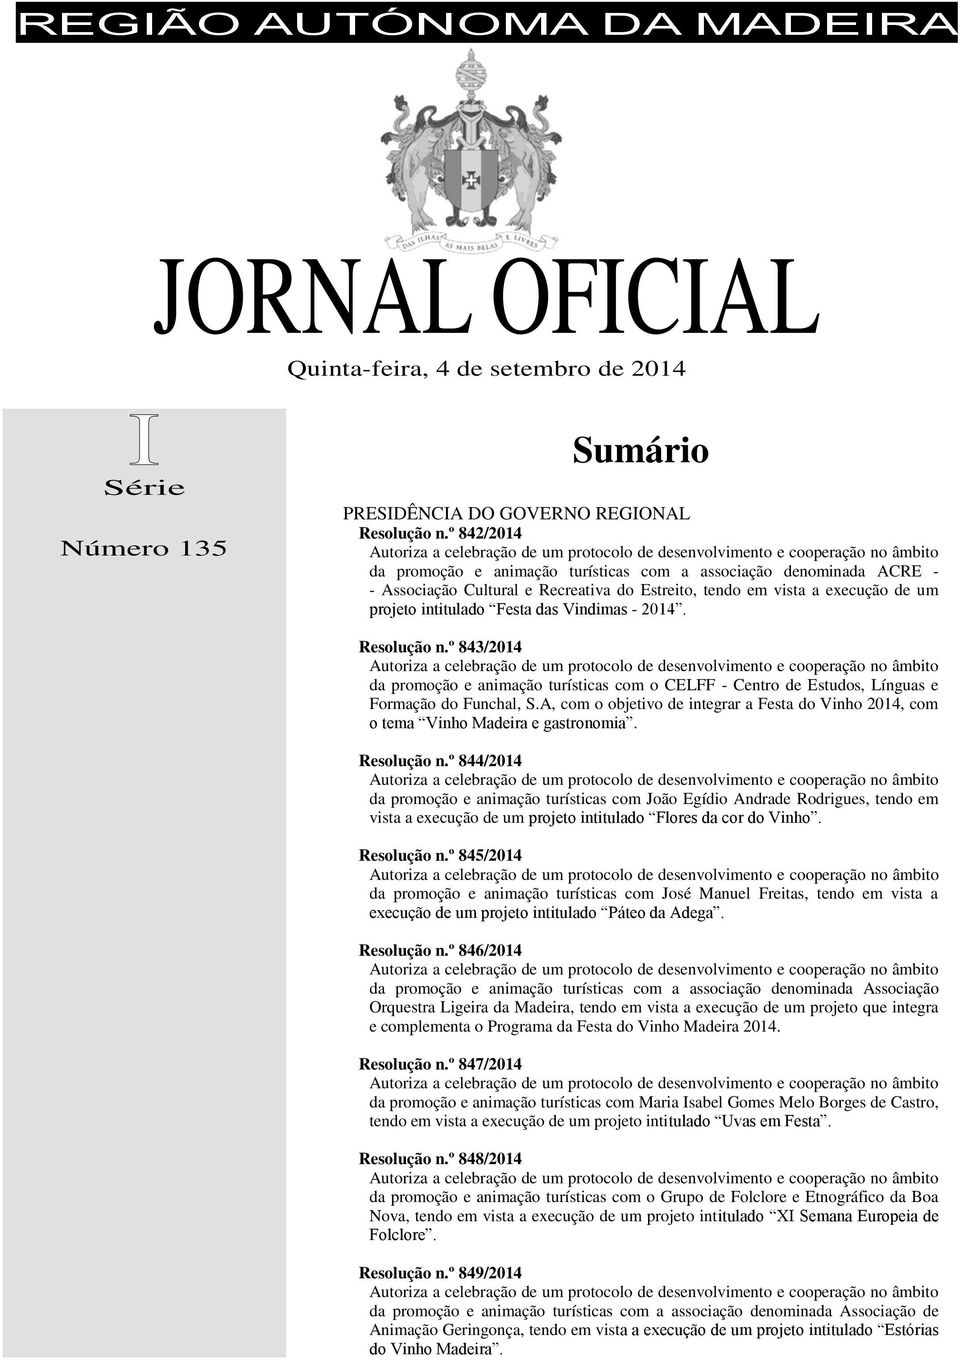 2014. Resolução n.º 843/2014 da promoção e animação turísticas com o CELFF - Centro de Estudos, Línguas e Formação do Funchal, S.